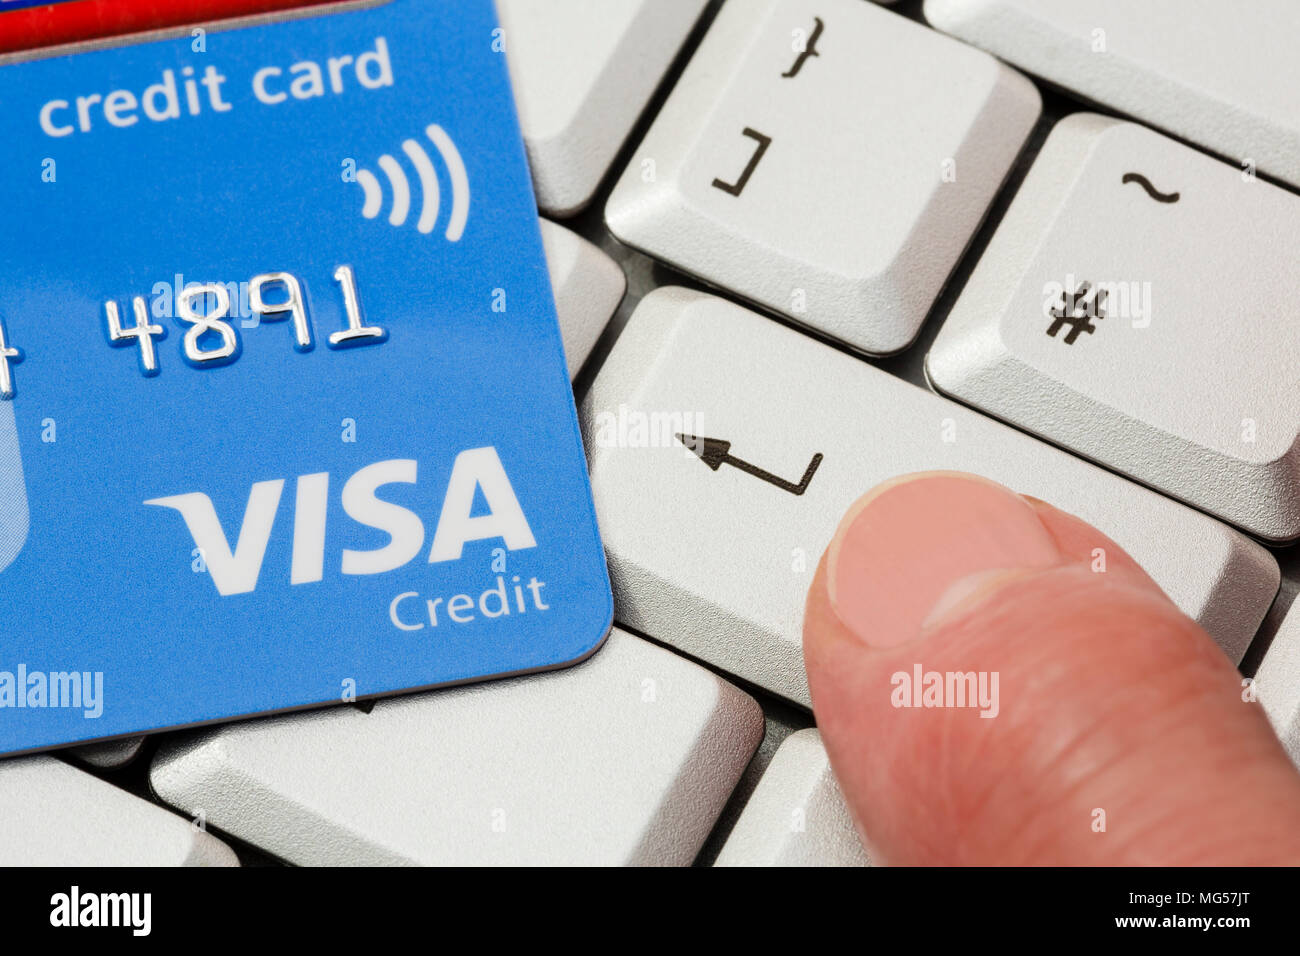 Carte de crédit Visa sans contact sur clavier avec le doigt d'une personne  en appuyant sur la touche entrée pour acheter en ligne avec Visa. Concept d'achat  Internet. Angleterre Royaume-Uni Photo Stock -